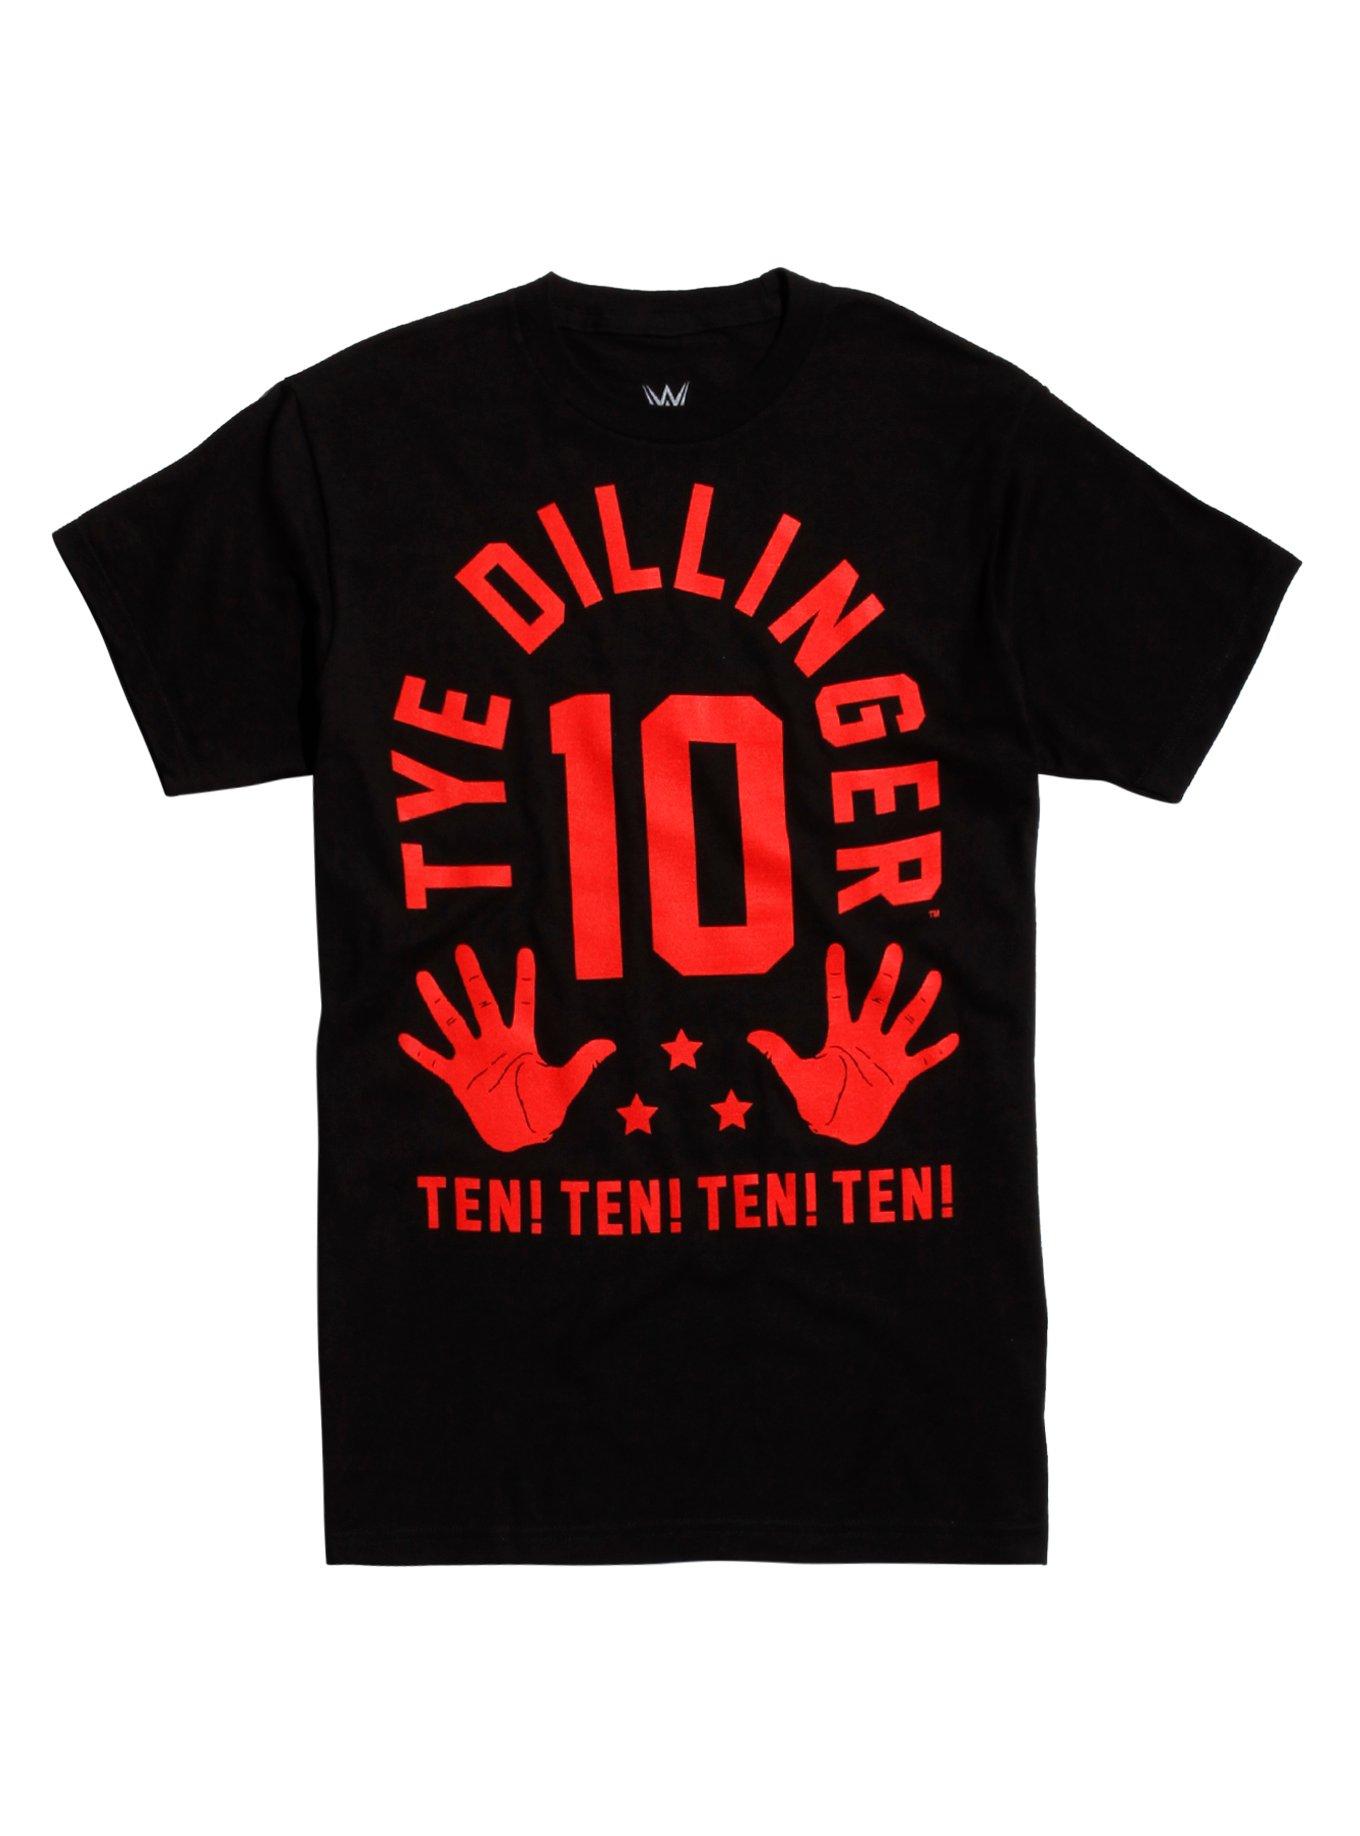 WWE Tye Dillinger Ten! T-Shirt, BLACK, hi-res